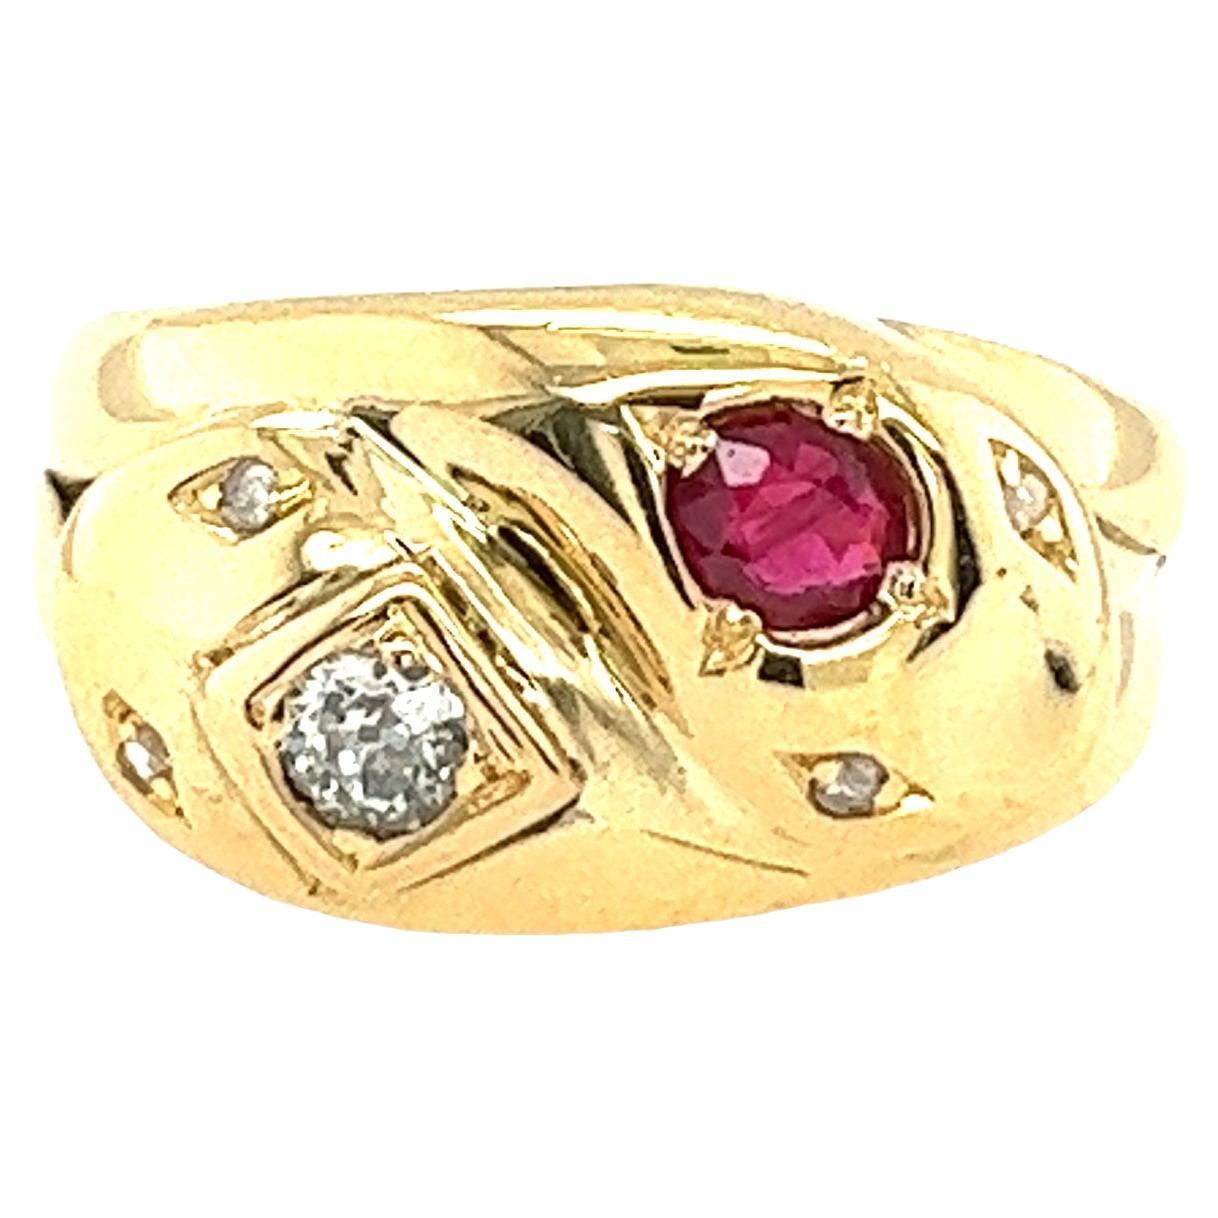 Ring aus 18 Karat Gelbgold mit Diamanten und Rubinen in einer Doppelschlangenkopf-Fassung